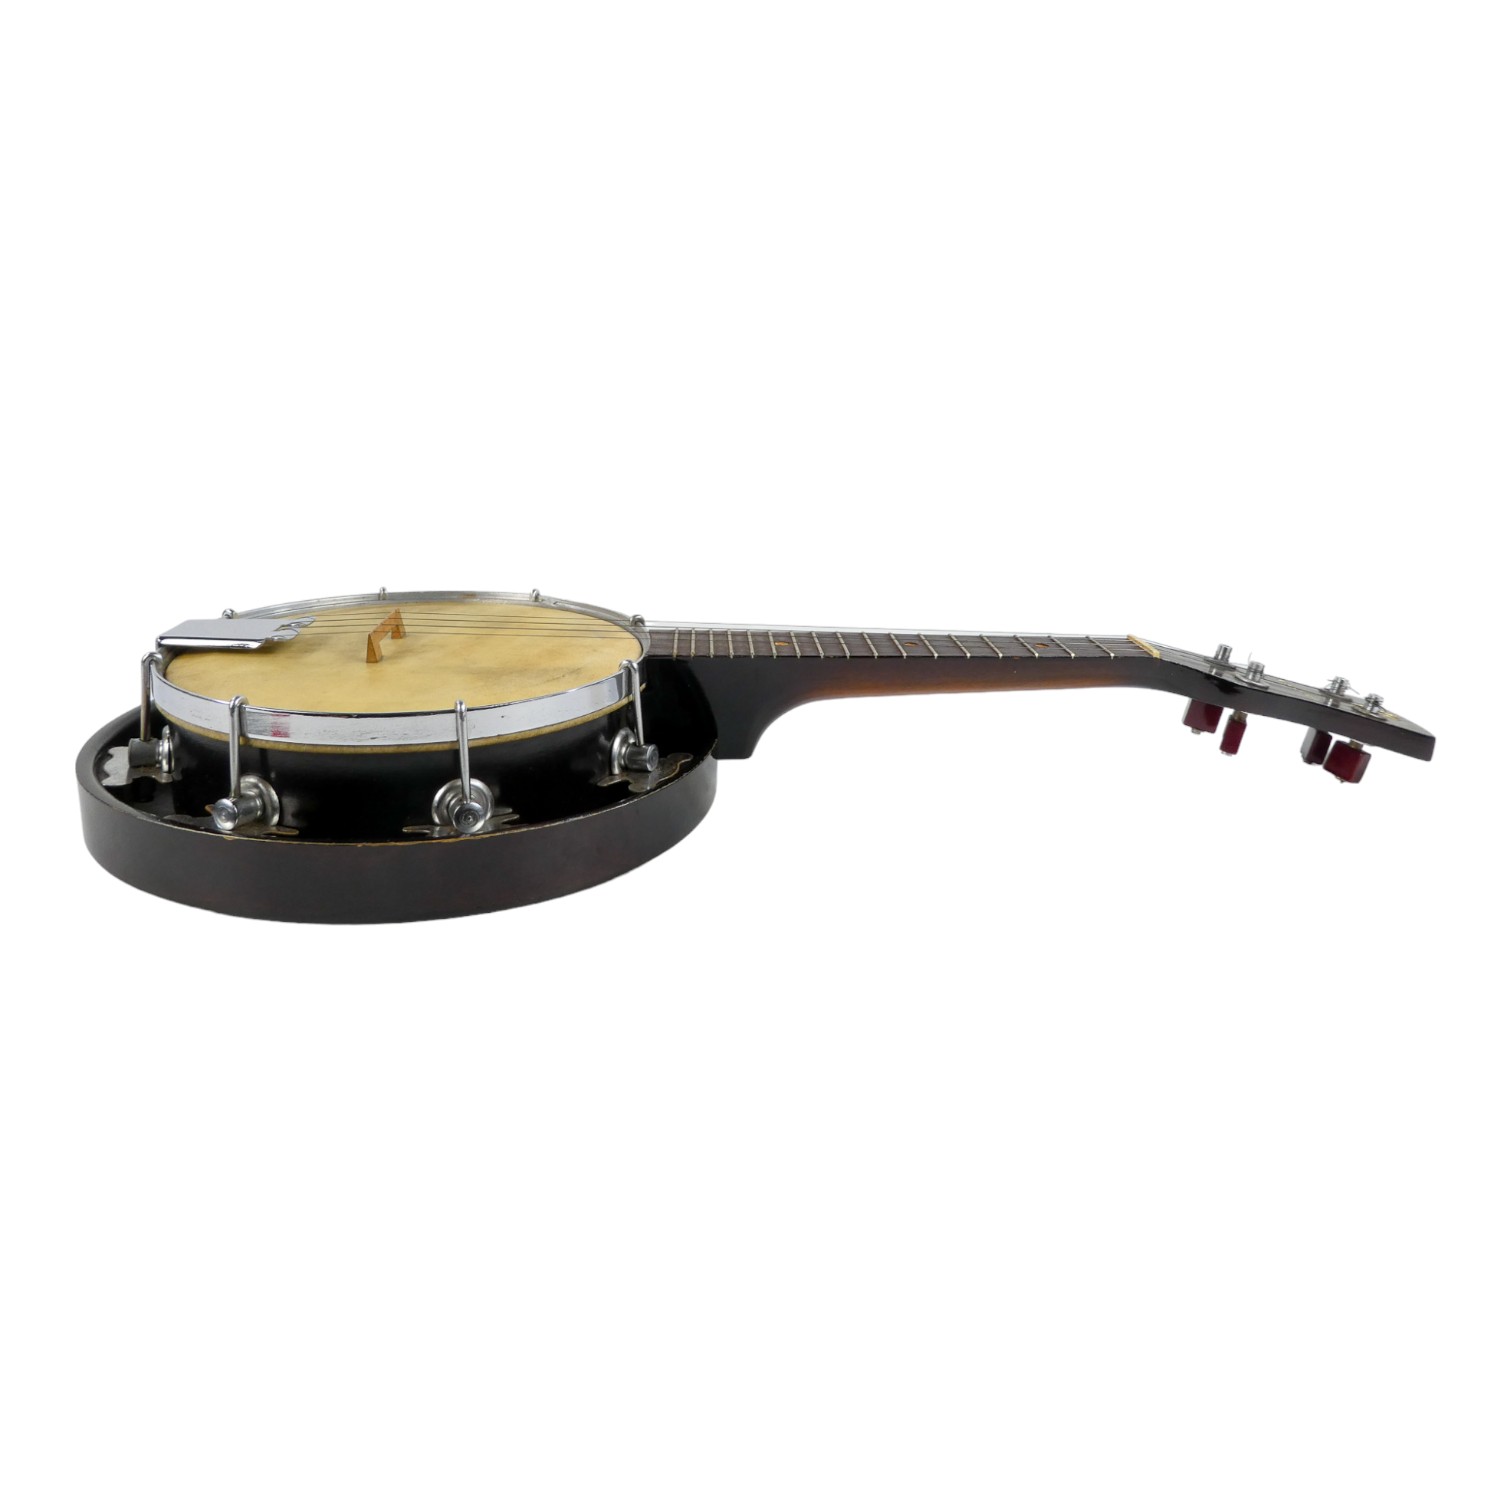 A GHS banjo ukulele - melody-uke, with original case. - Image 5 of 7